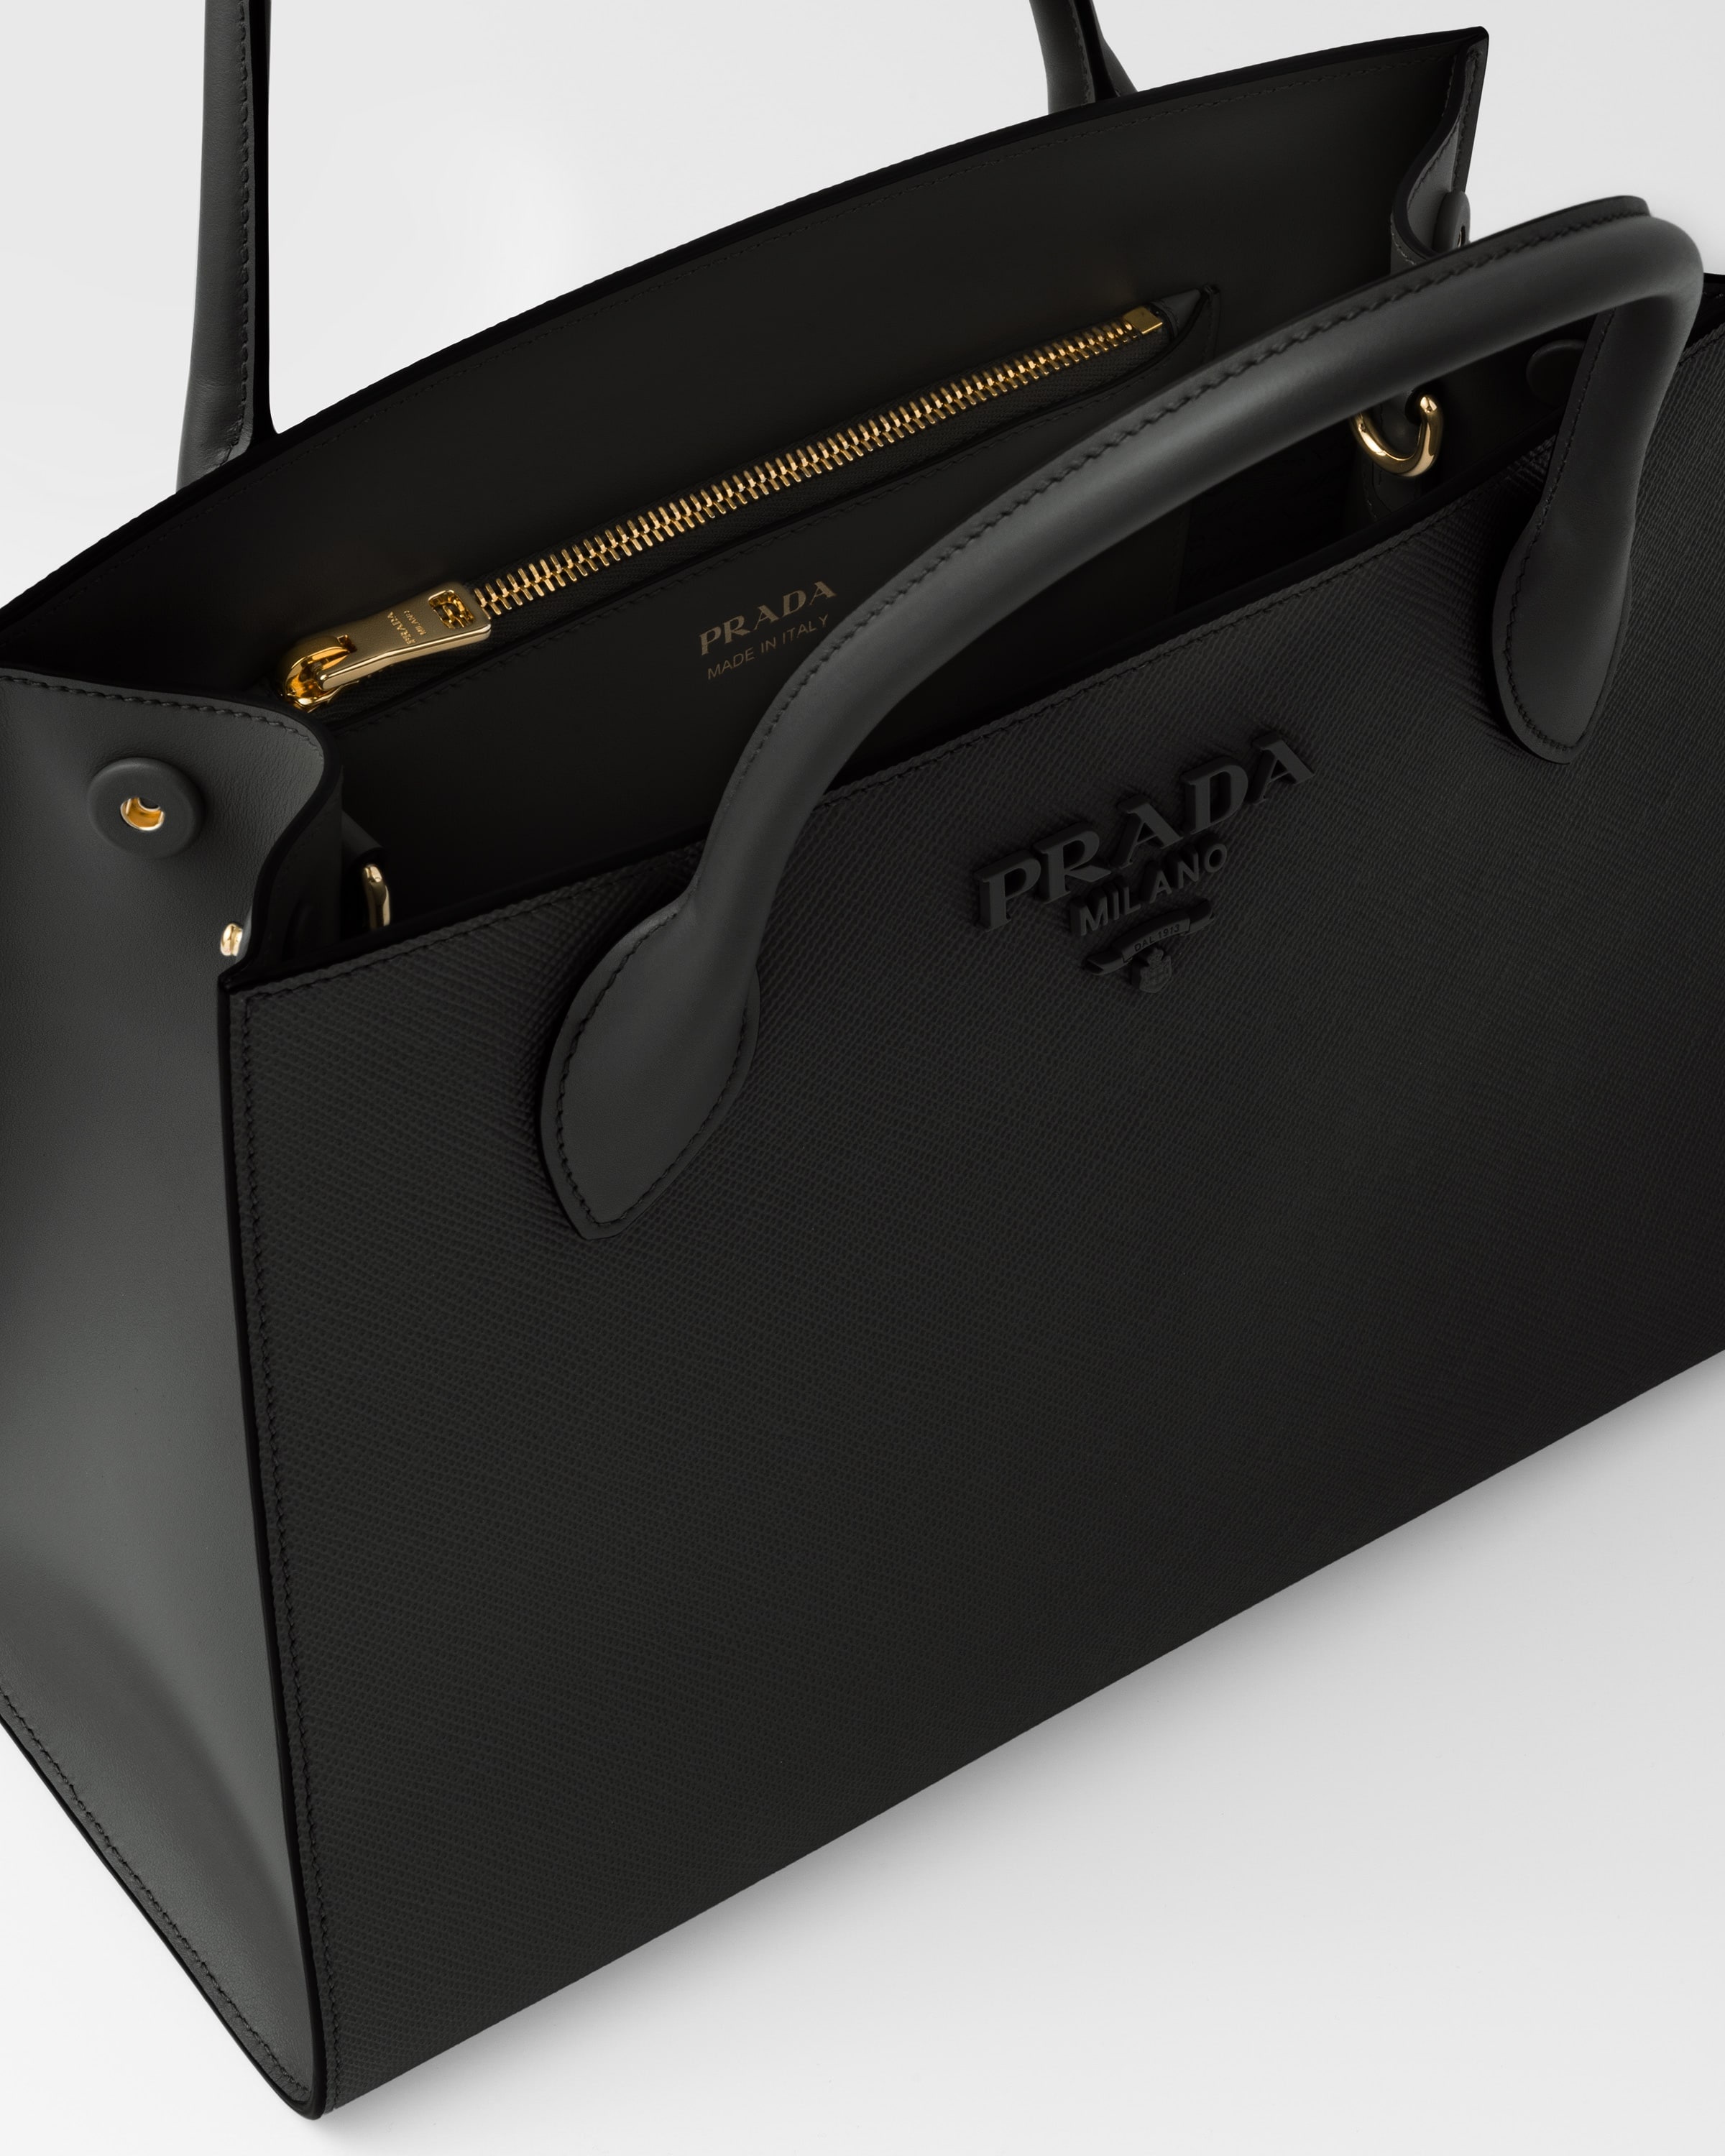 Black Prada Monochrome Medium Saffiano Bag